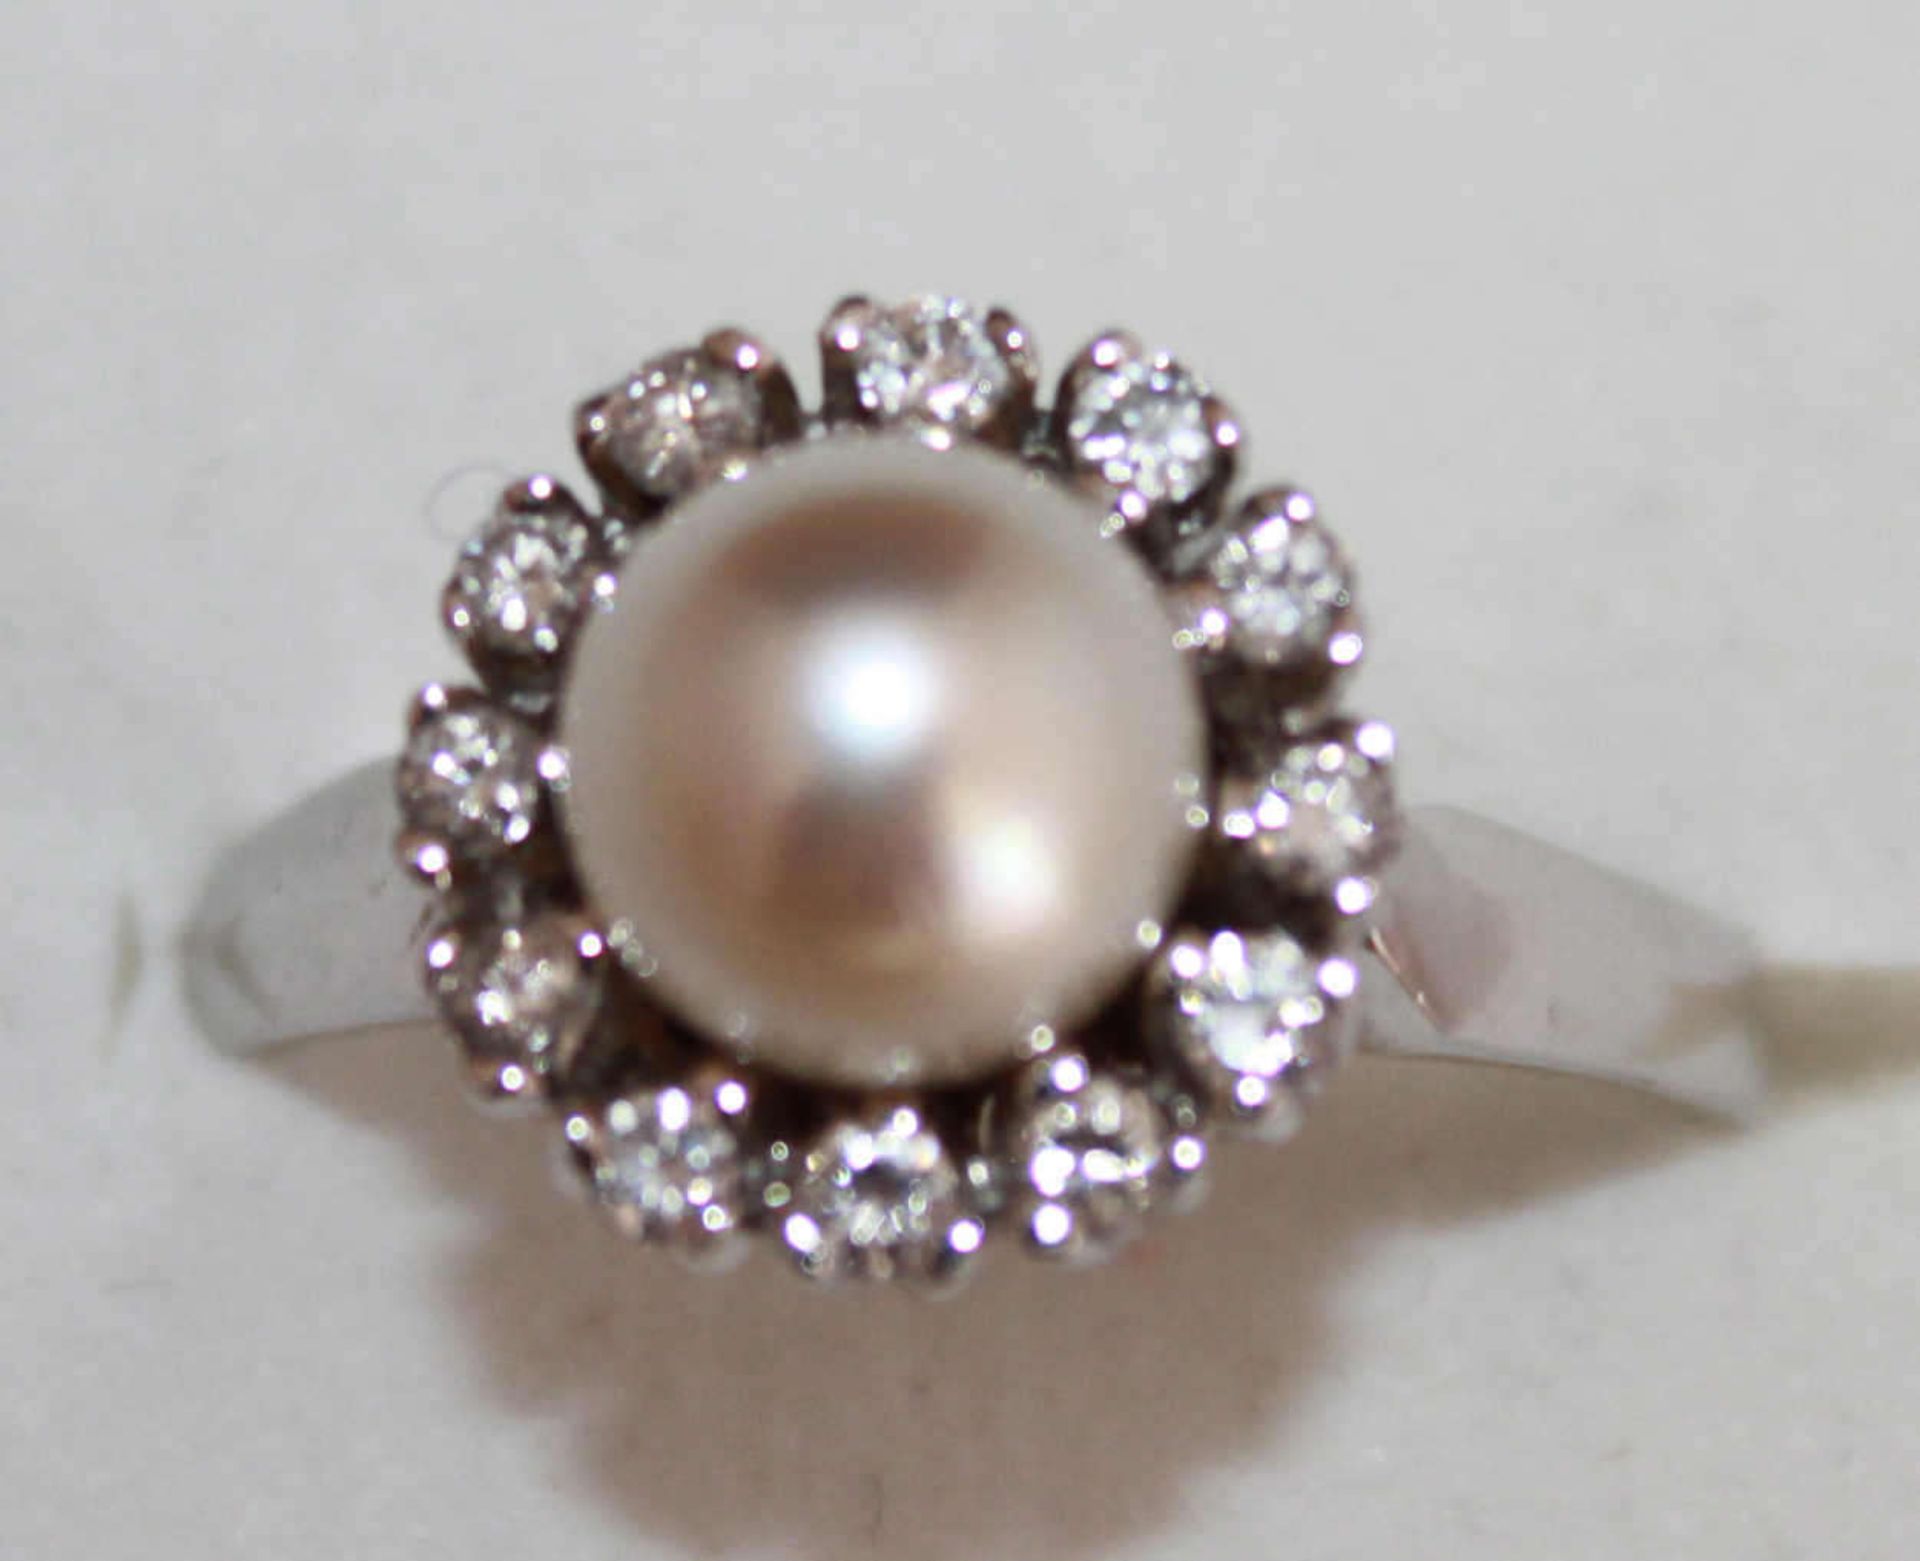 Damen-Ring aus 585er Weißgold, besetzt mit 1 Perle und Zirkonia, Ringgröße 56, Gewicht ca. 3,76 g.